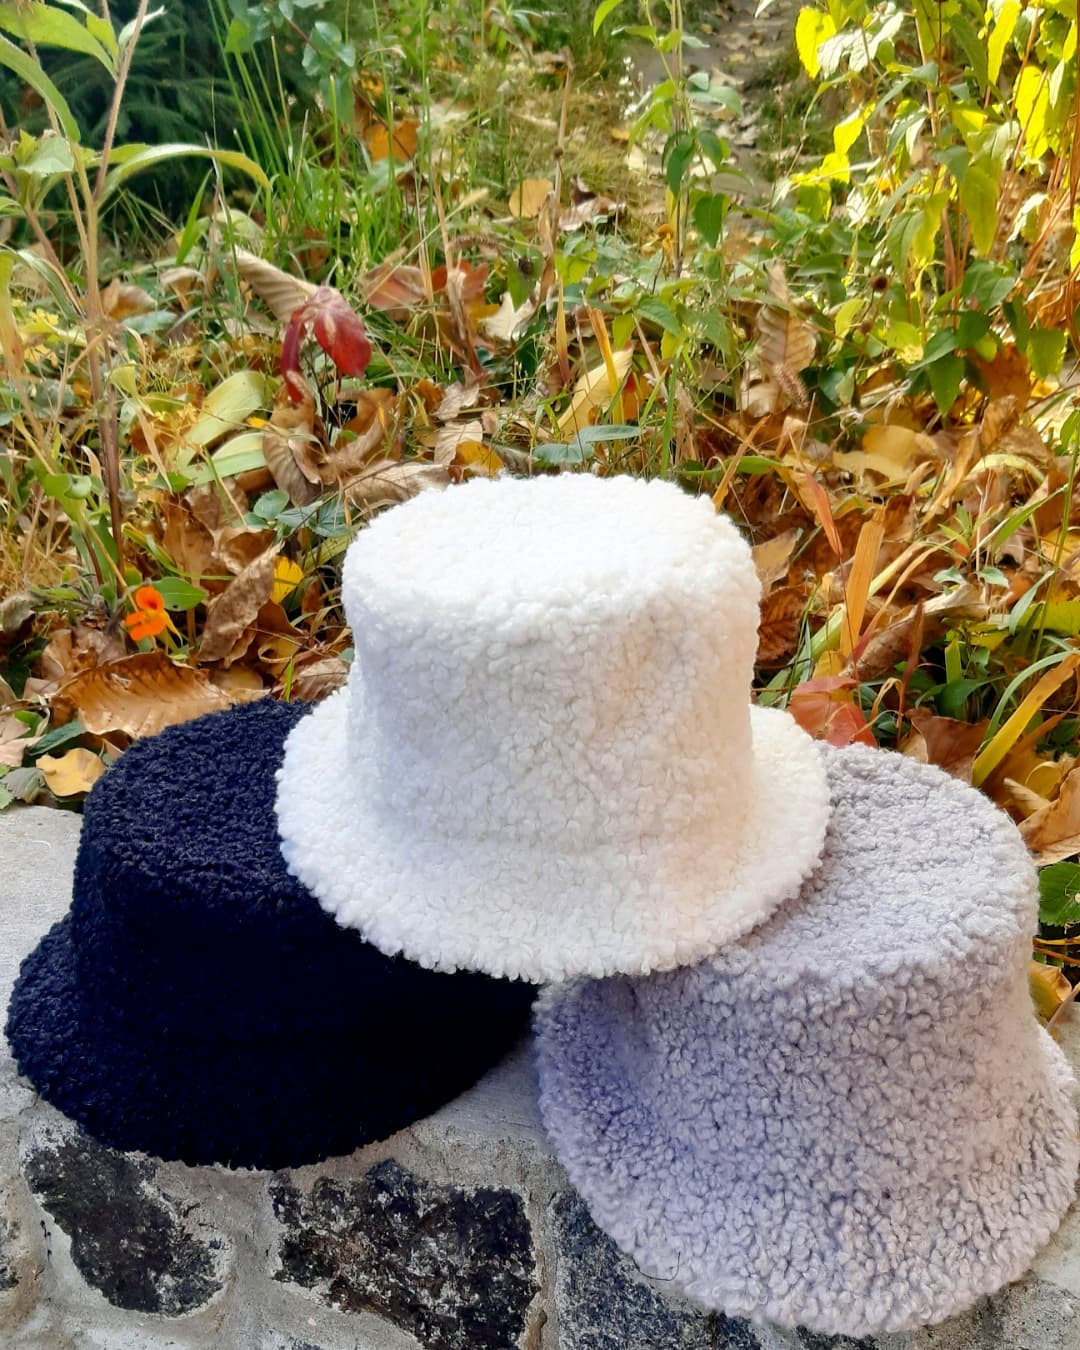 модный головной убор зима 2021 2022 теплое на голову шапка панама мех овчина серая белая синяя